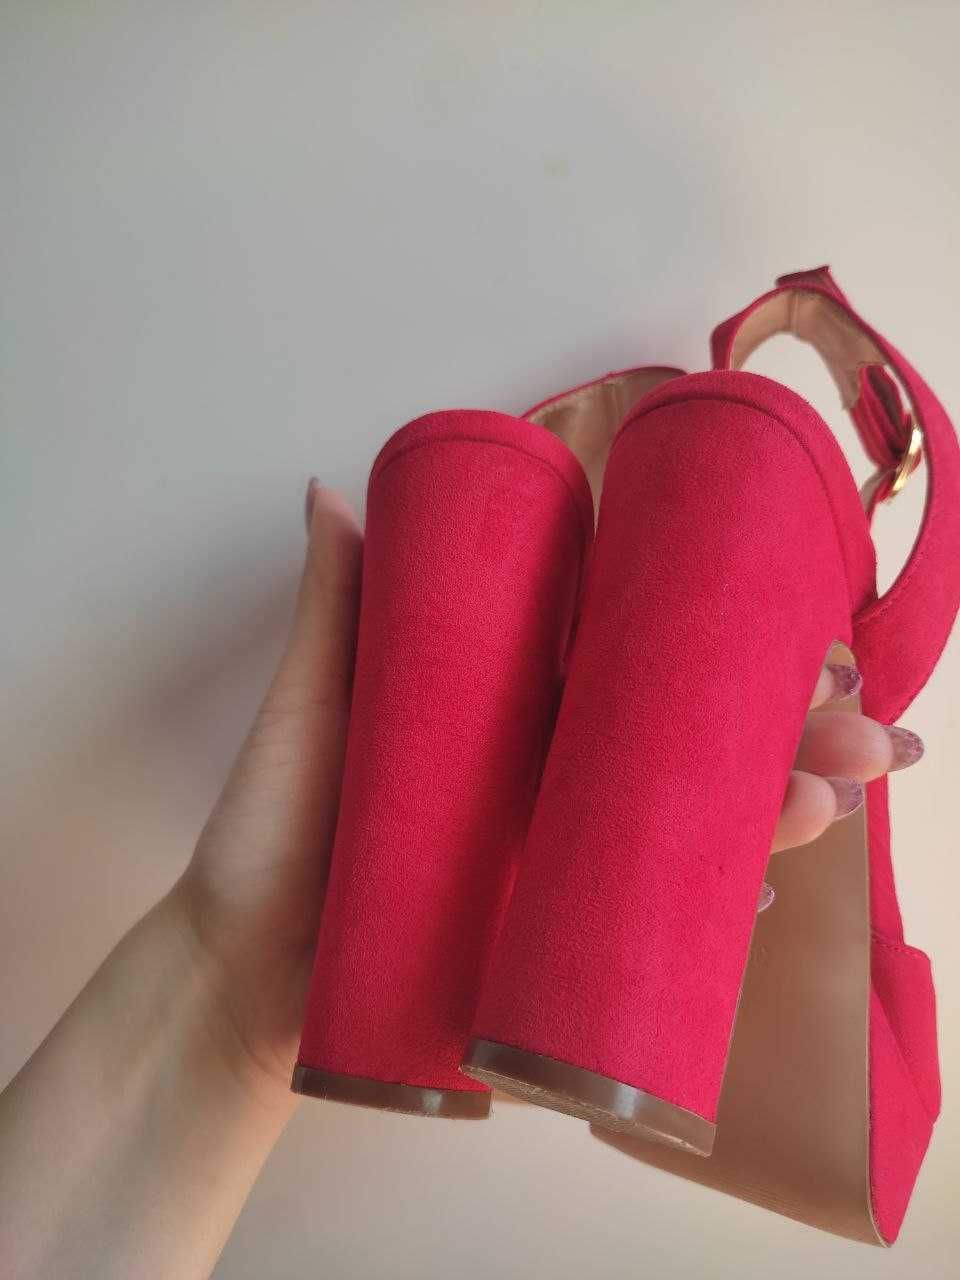 Червоні туфлі- босоніжки зі штучної замші на високому коблуку